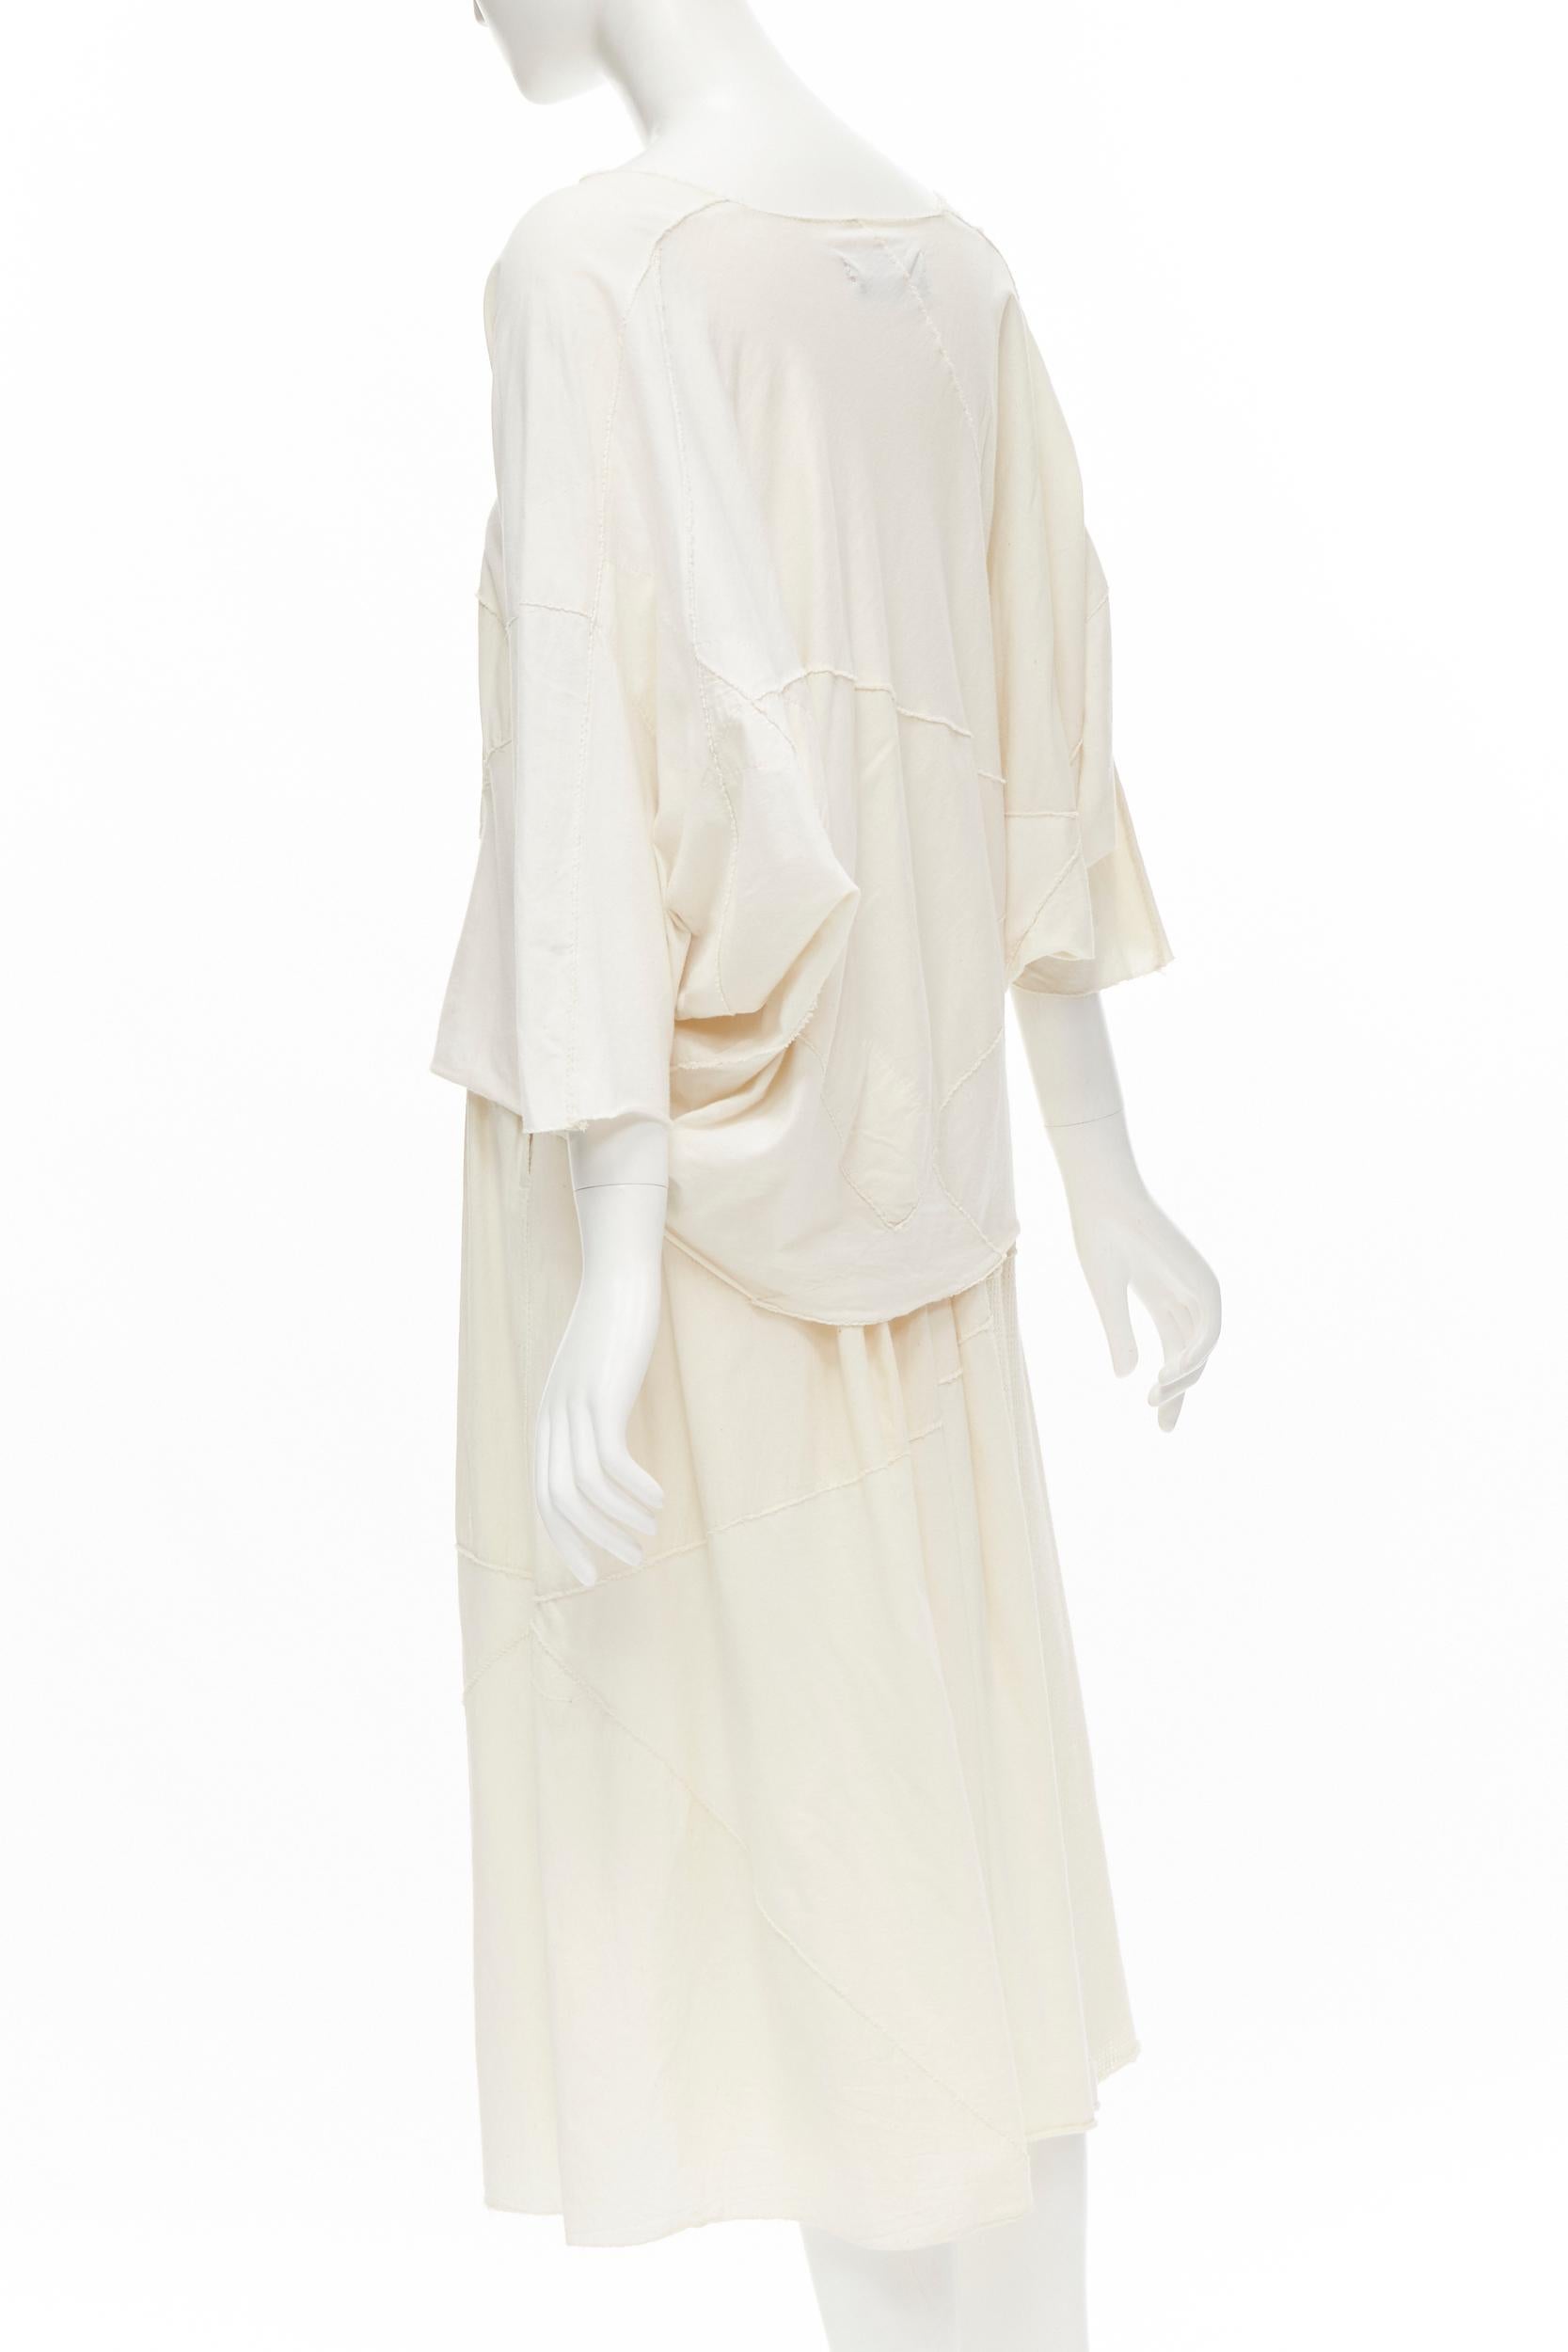 COMME DES GARCONS TRICOT Vintage raw cotton patchwork trapeze top midi skirt For Sale 1